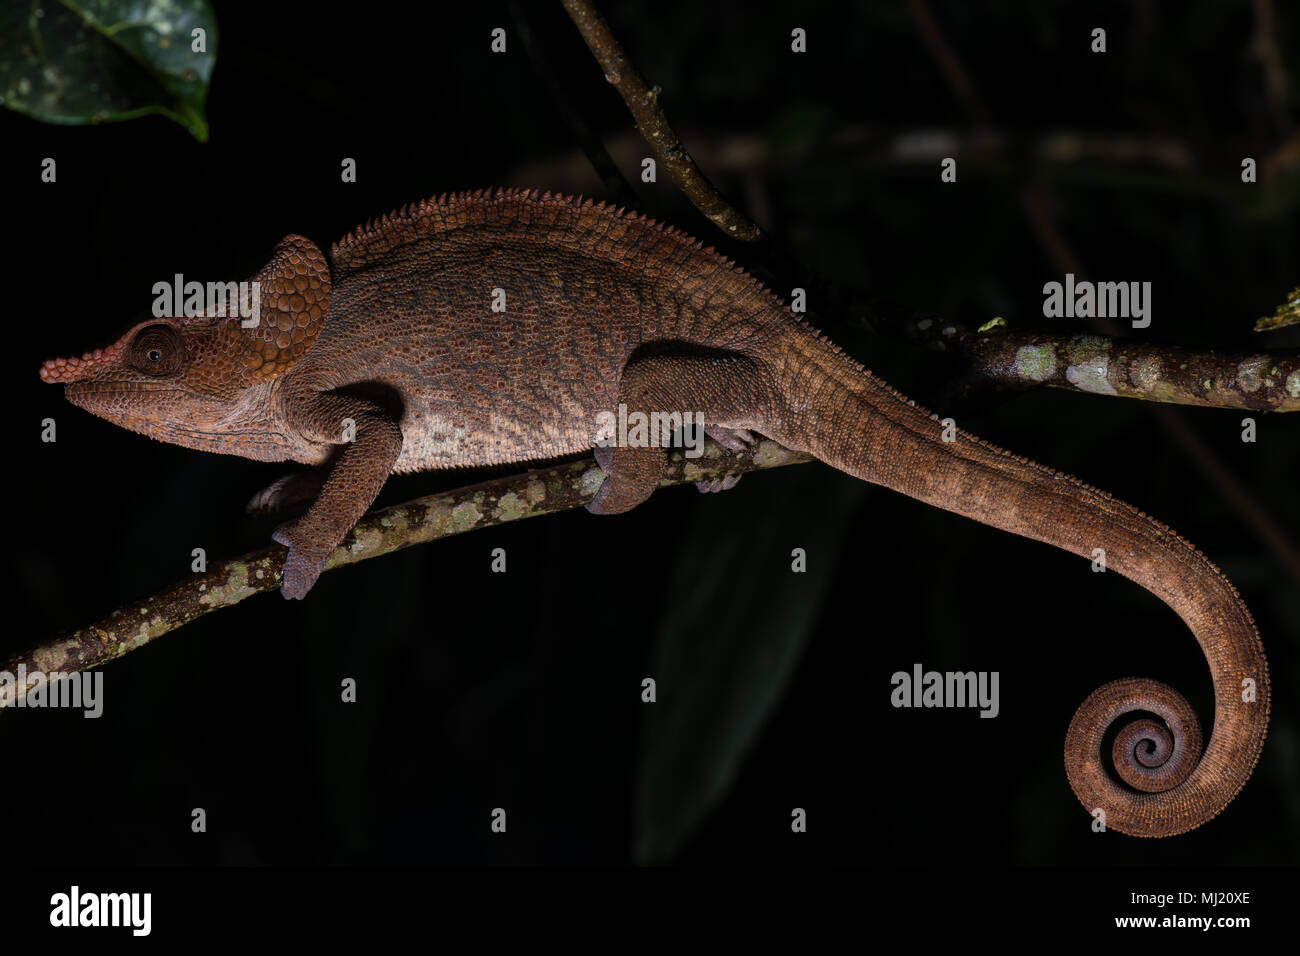 Short-horned chameleon (Calumma brevicorne), male on a branch, Analamazoatra, Andasibe National Park, Madagascar Stock Photo